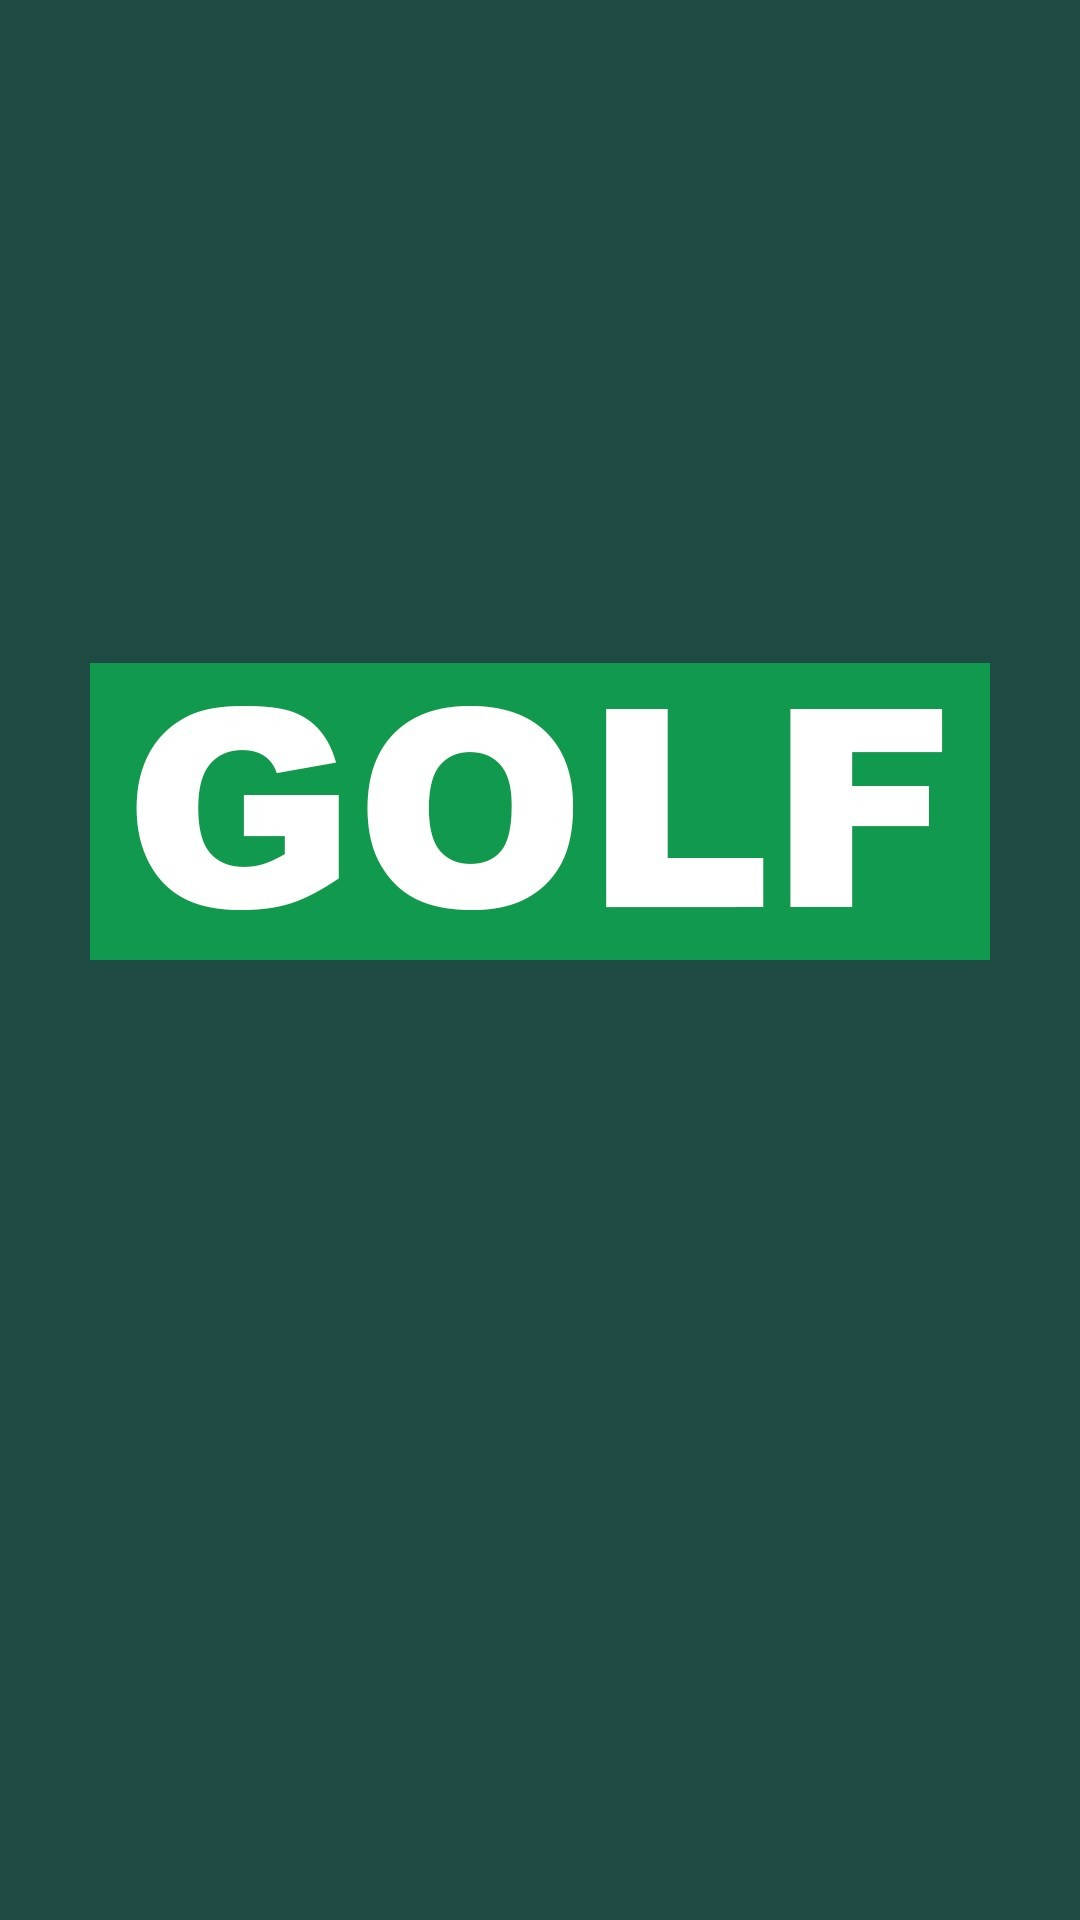 Green Golf Text Iphone Wallpaper